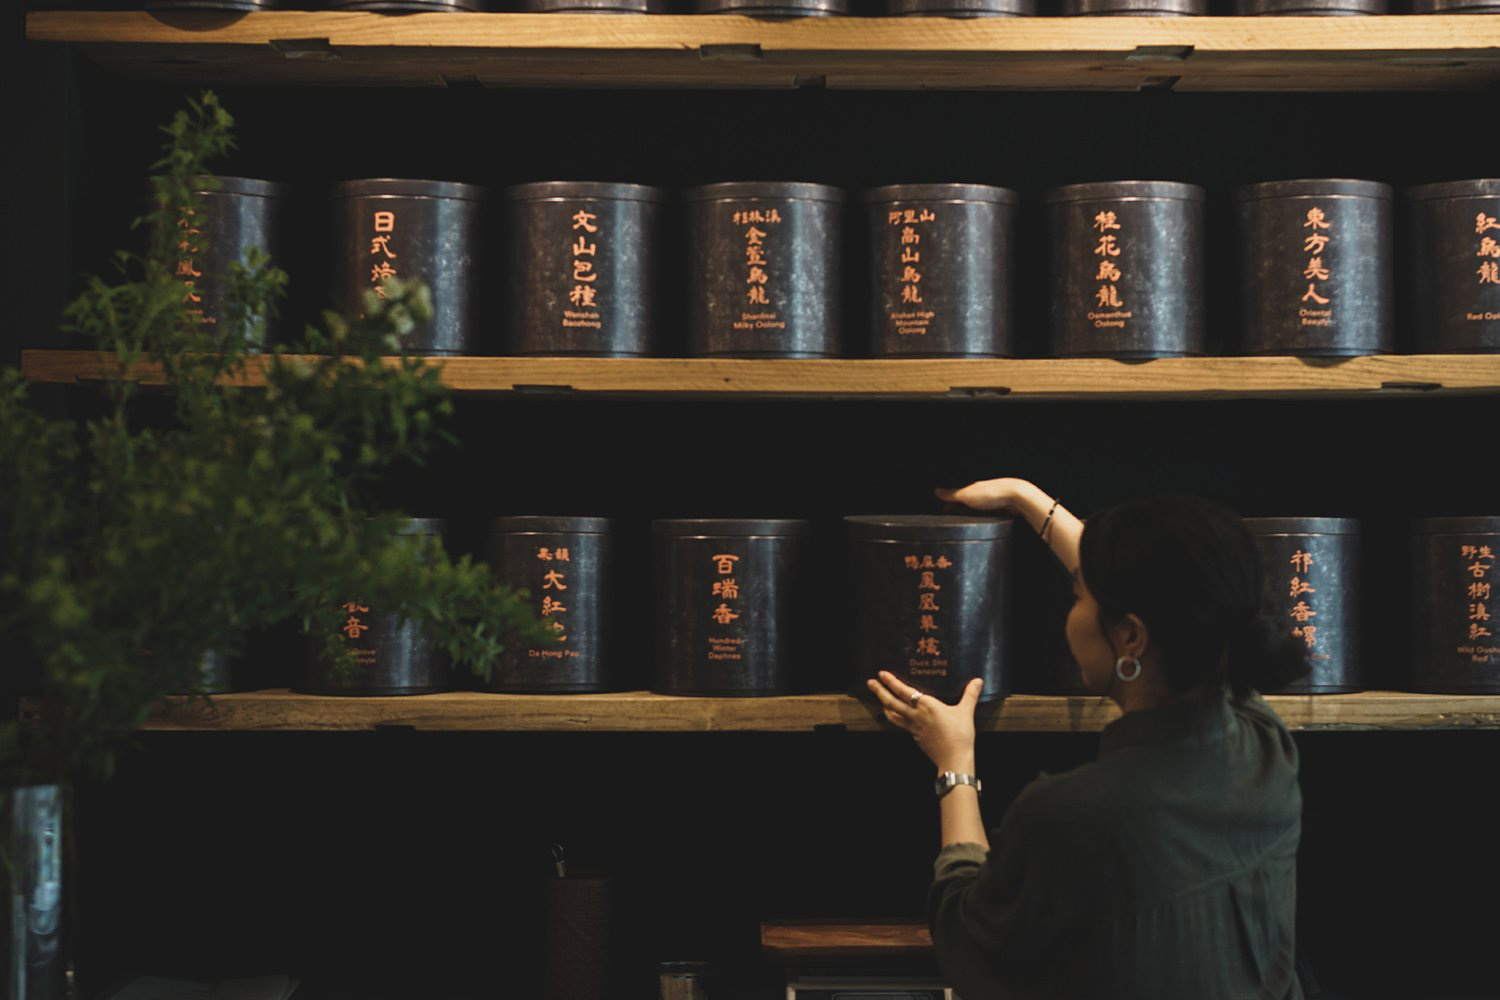 茶饮店设计,茶饮店设计案例,茶饮店设计方案,Nana Chan,休闲茶饮店设计,香港,石塘咀,Plantation Tea Bar,东方茶文化